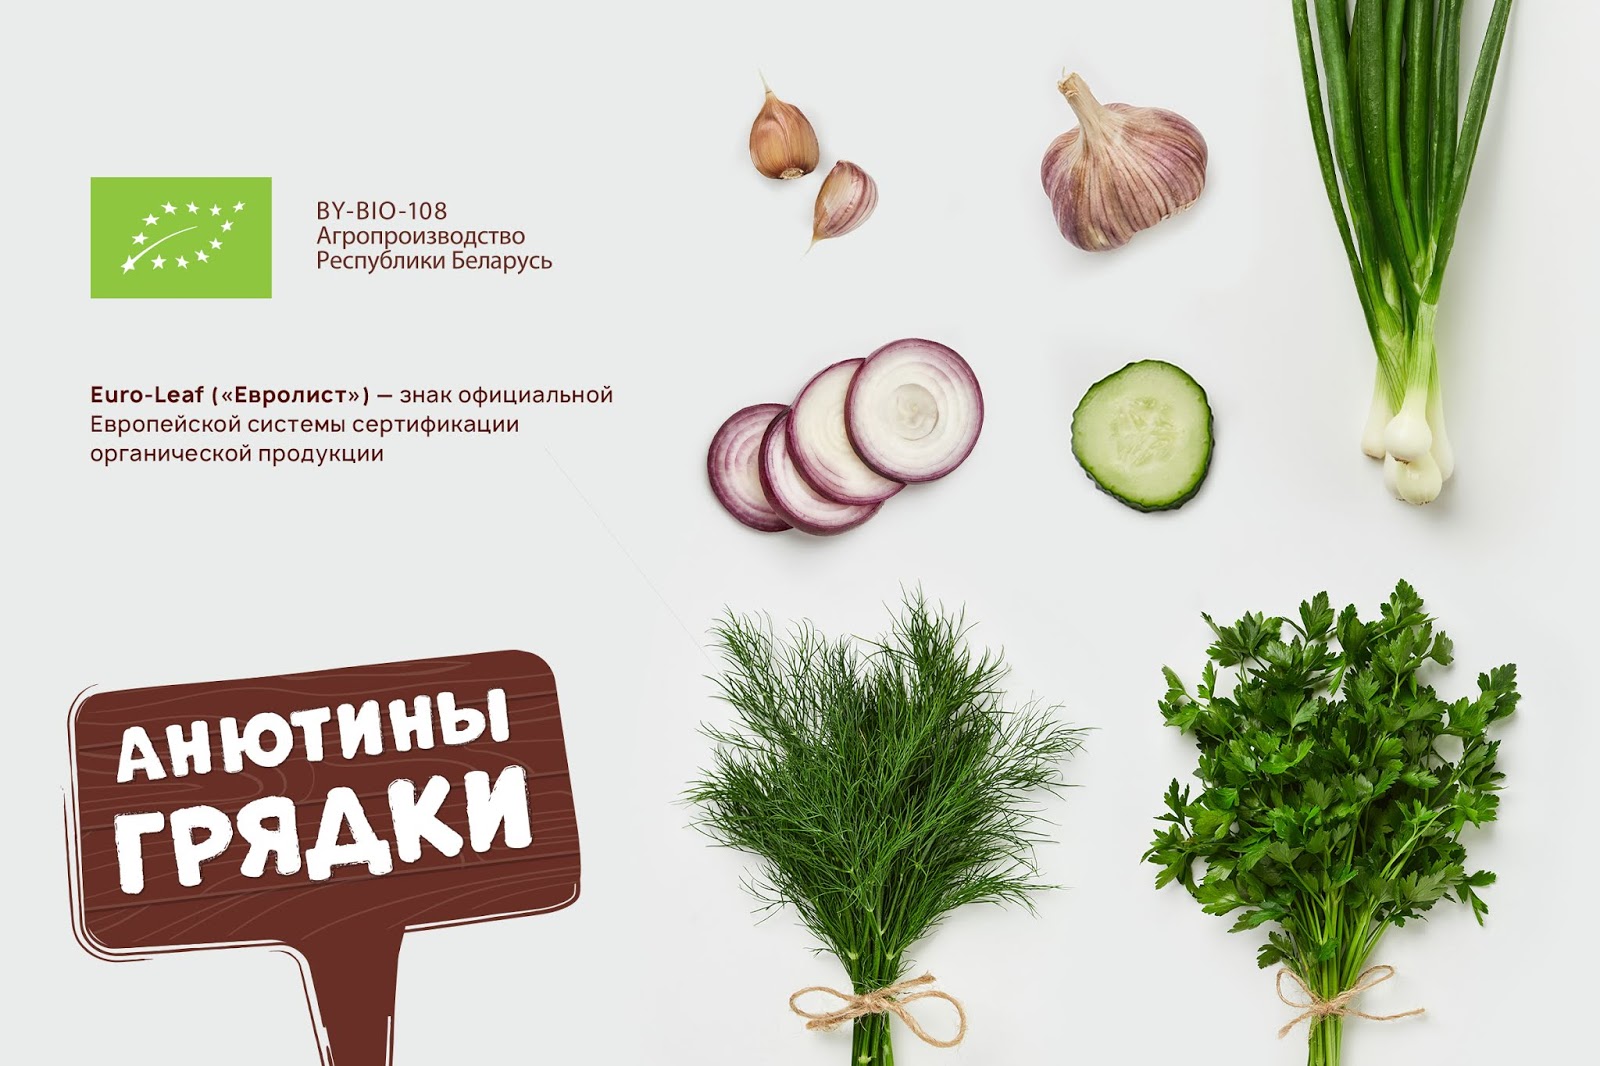 环保蔬菜西安oe欧亿体育app官方下载
品牌包装设计